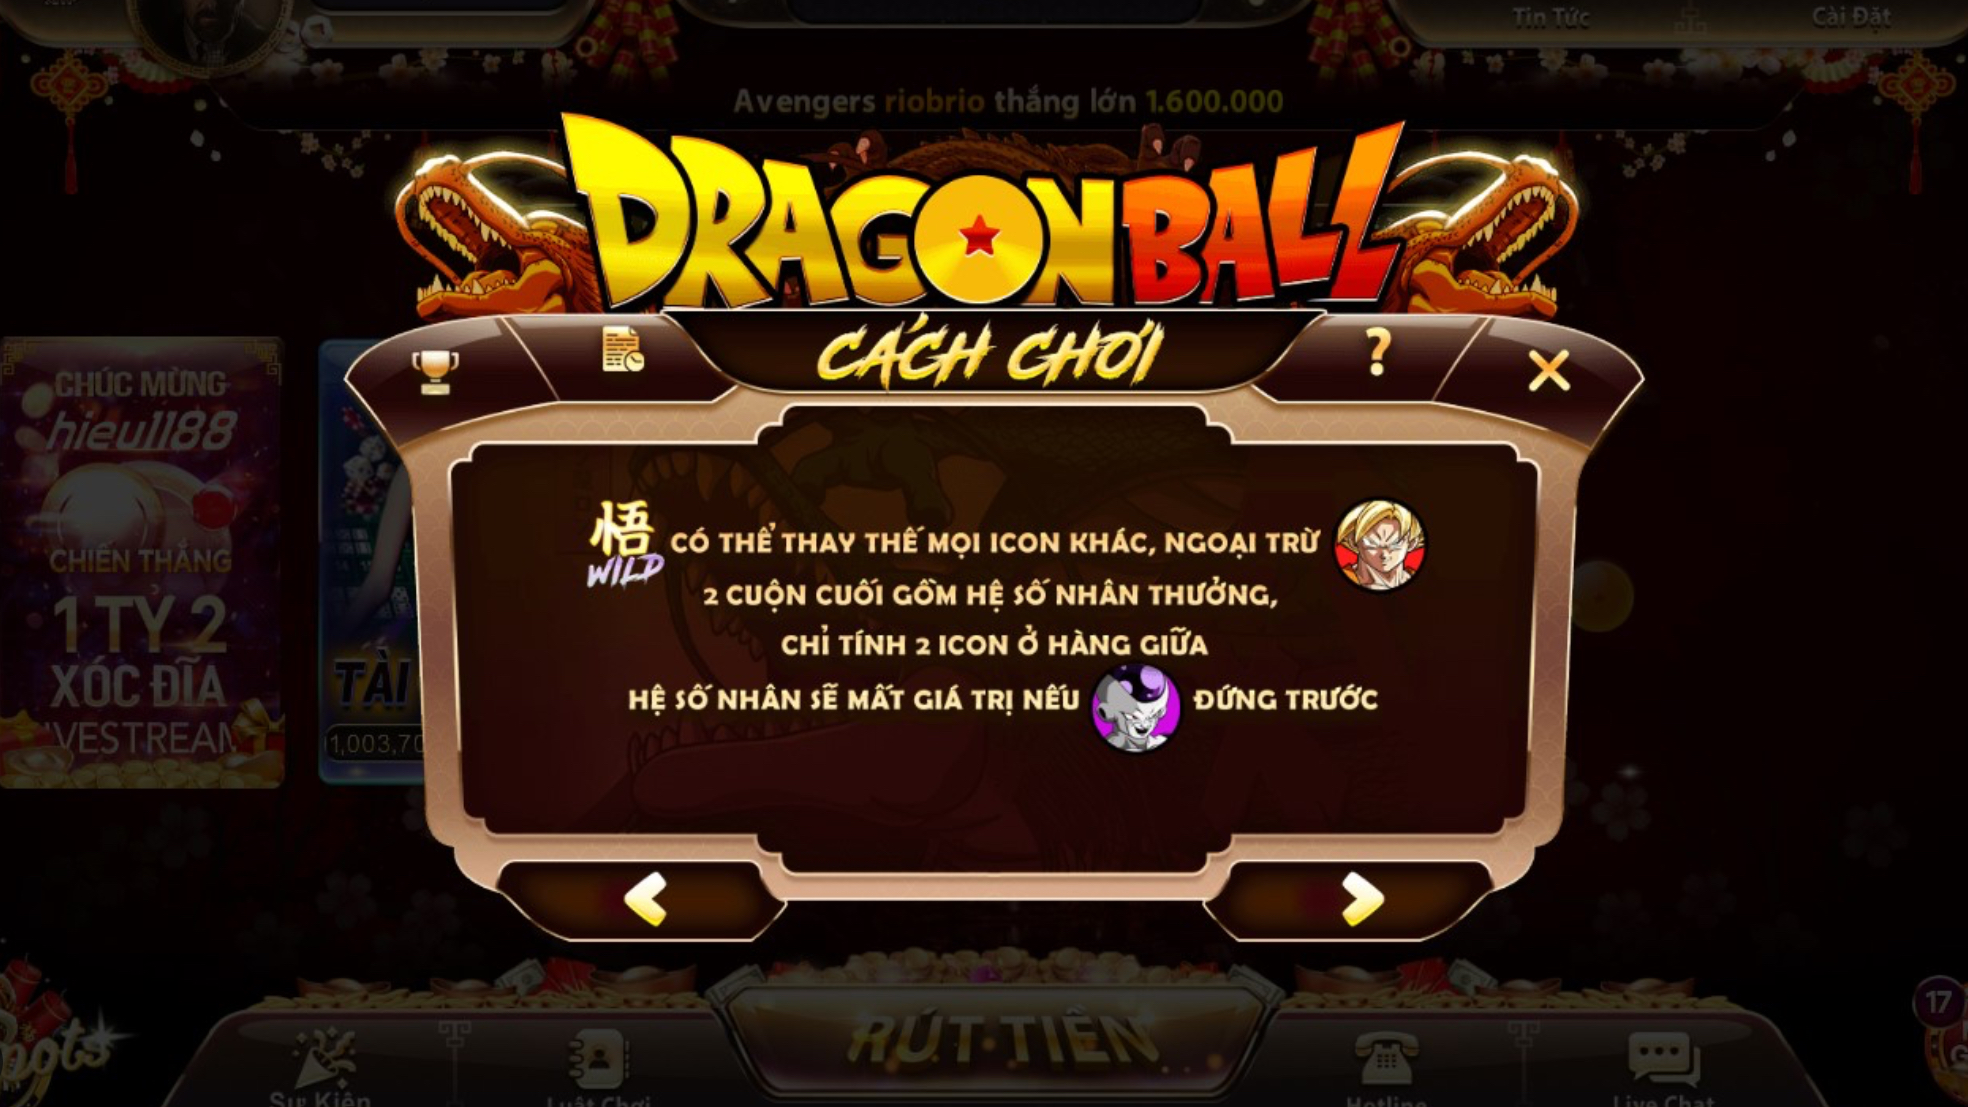 Hướng dẫn chơi cụ thể Dragon Ball link tải Nhatvip 